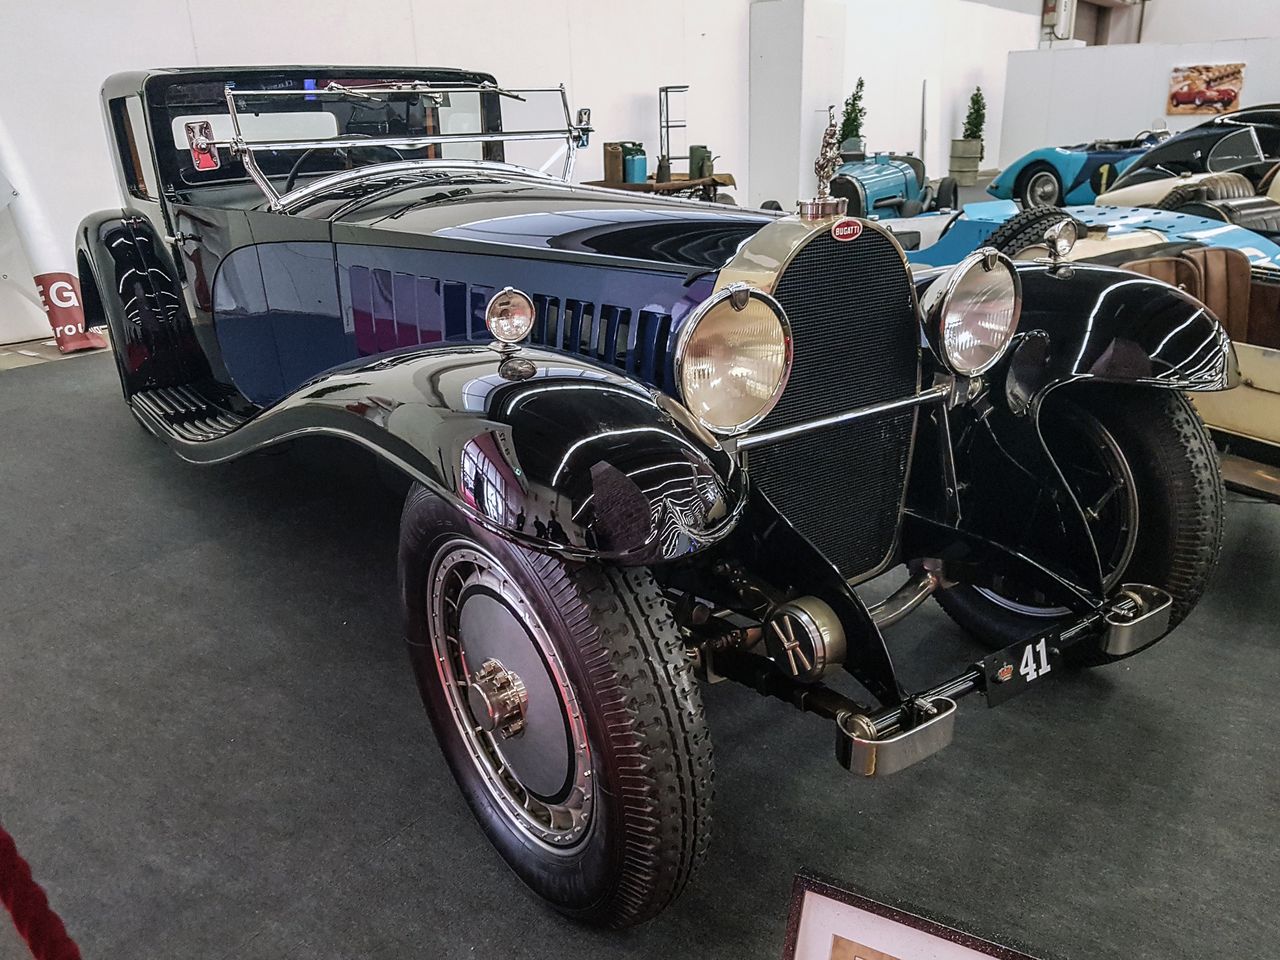 Bugatti Typ 41 Royale Napoleon - replika, ale pięknie wykonana.